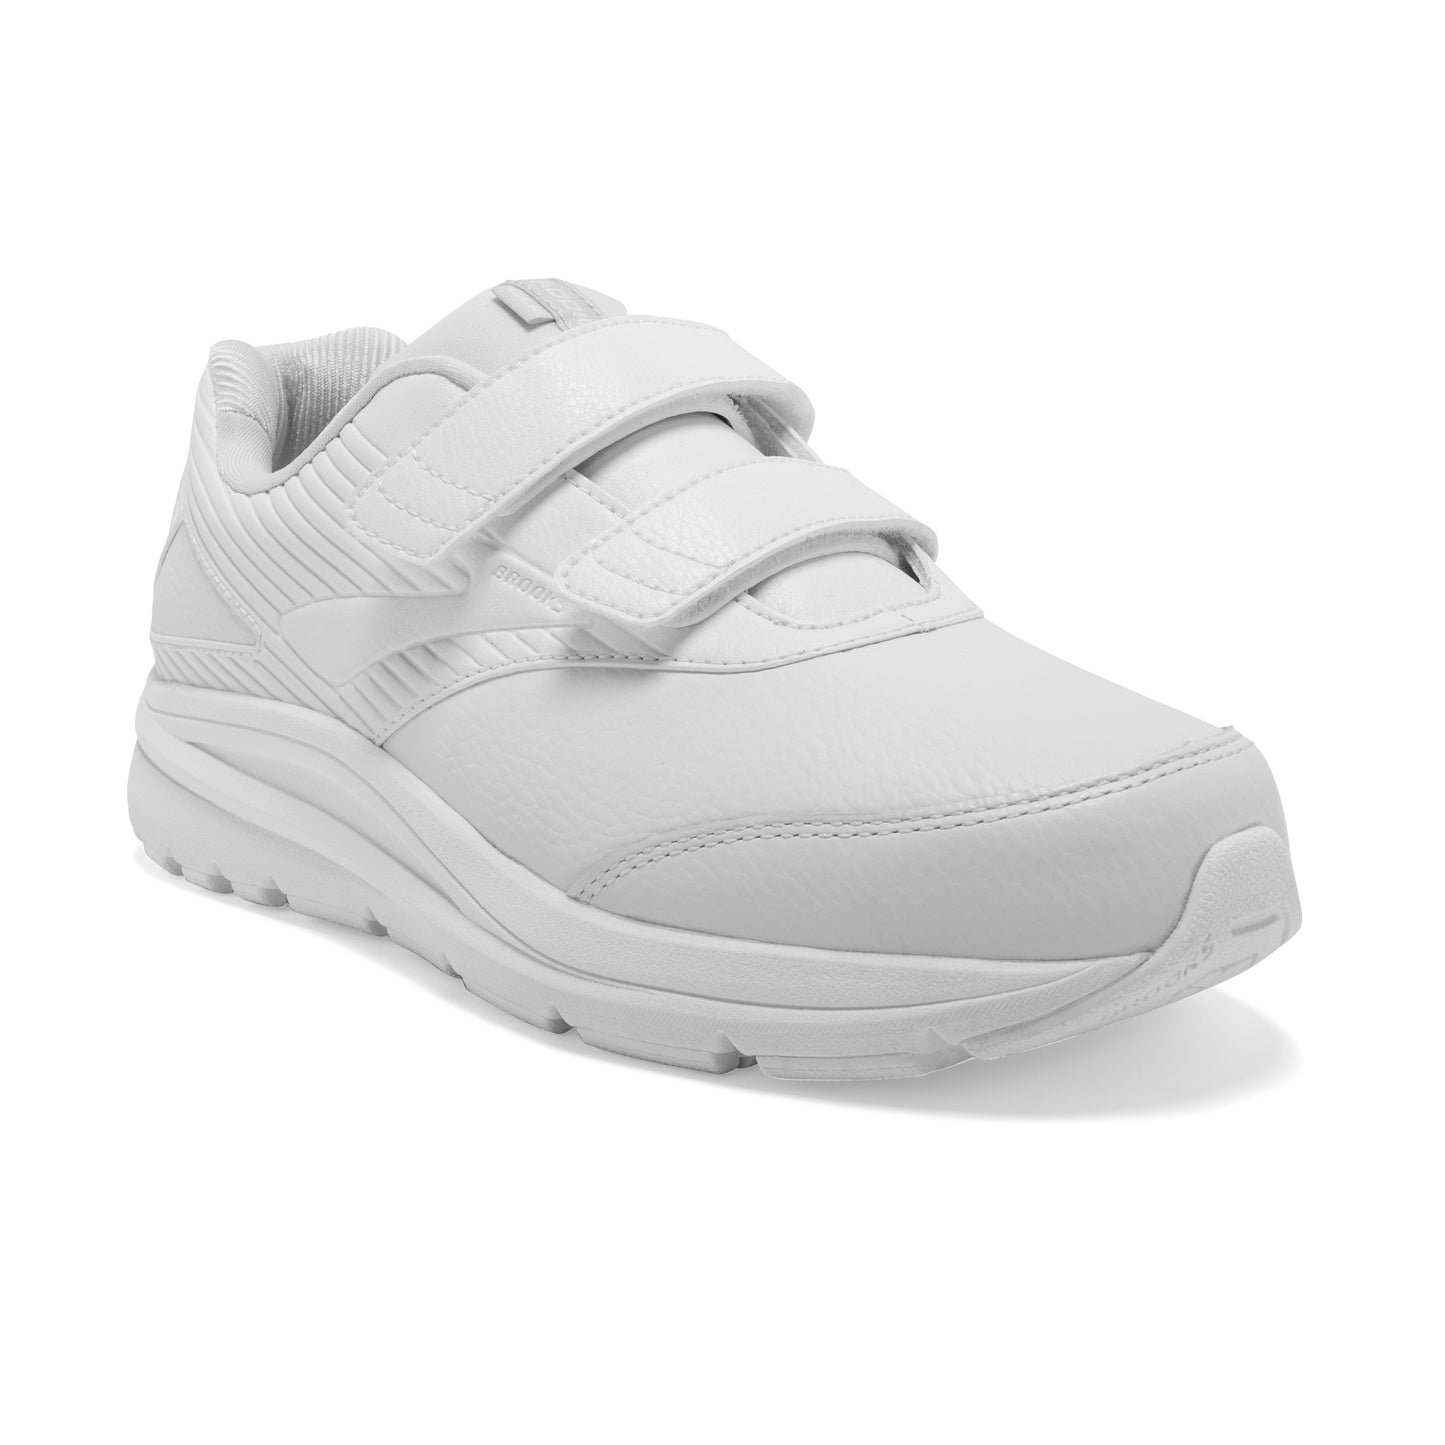 Women's Addiction Walker VStrap 2 Walking Shoe - White/White- Regular (B)